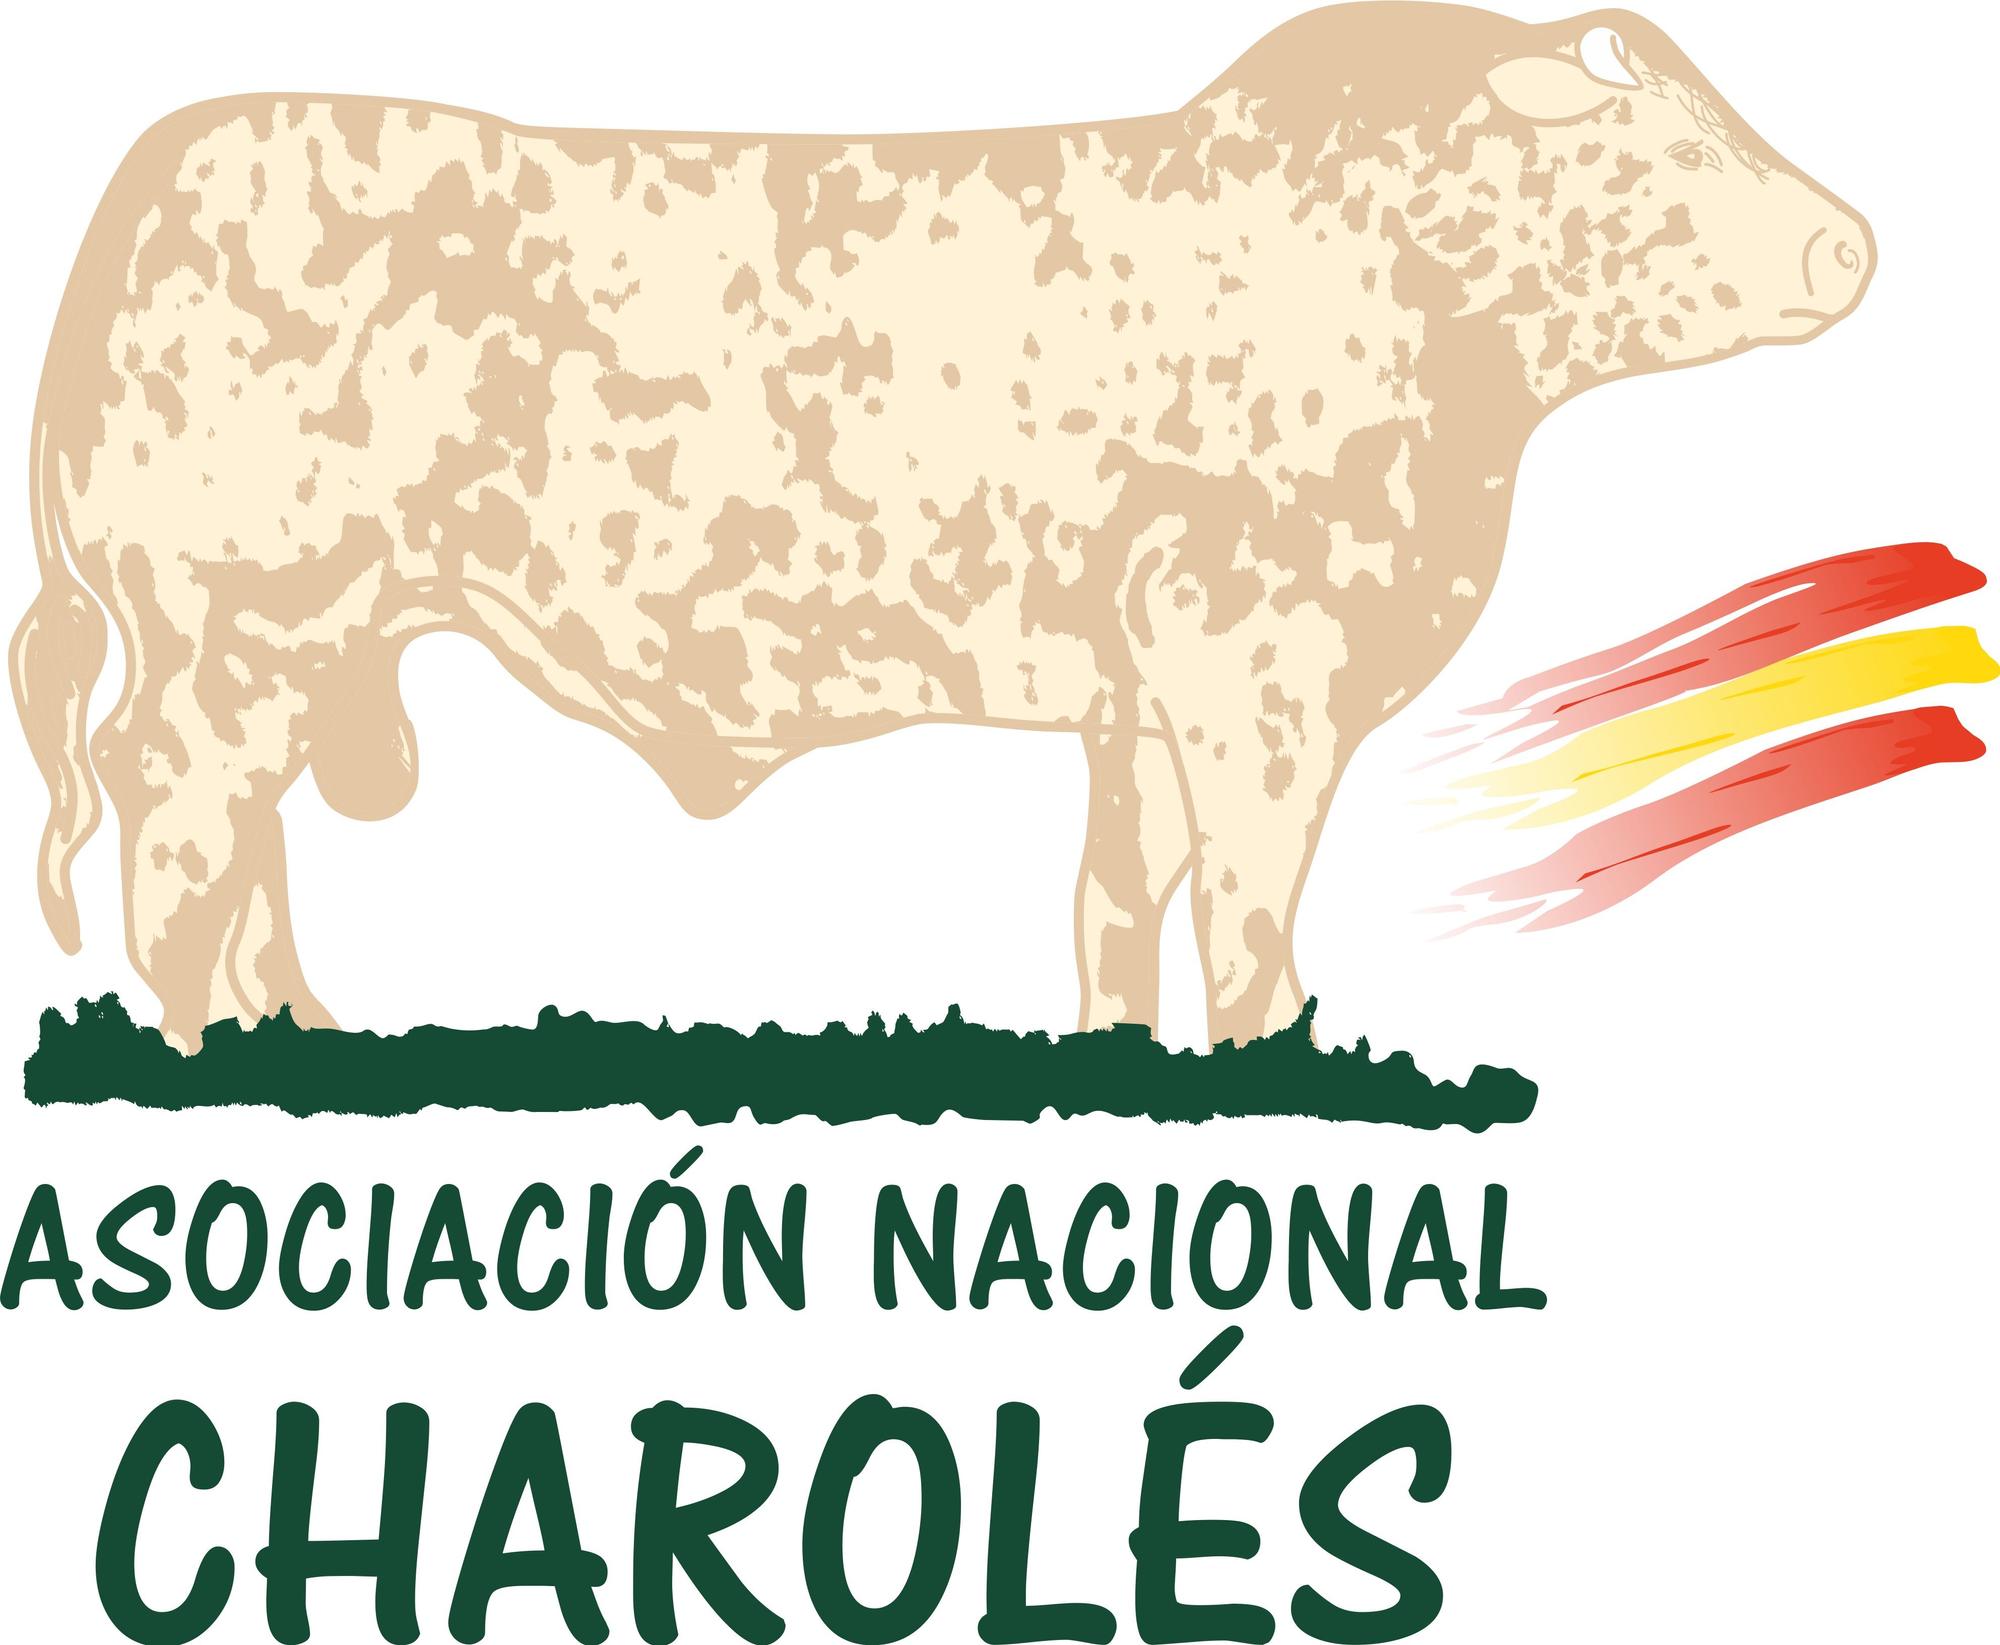 ASOCIACIÓN NACIONAL DE CHAROLÉS